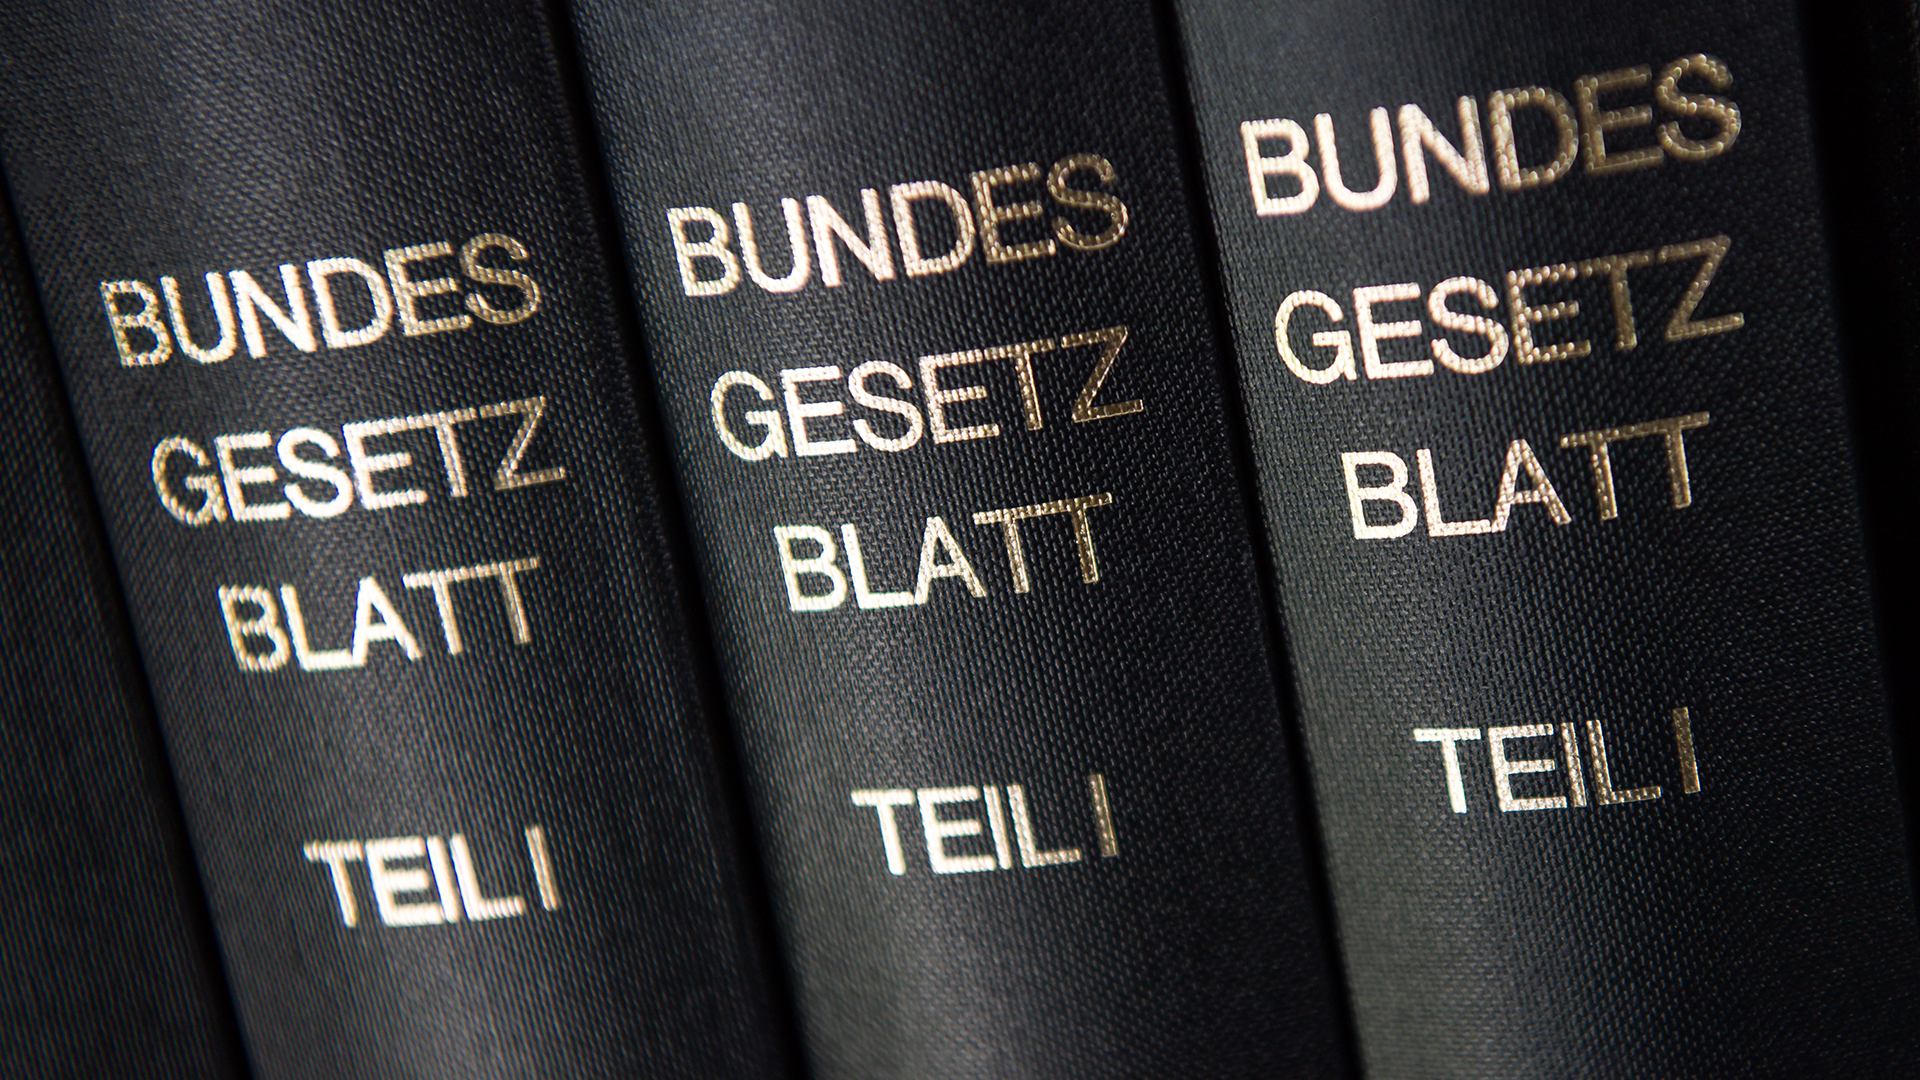 Bücher mit der Aufschrift "Bundesgesetzblatt" | picture alliance / Peter Kneffel